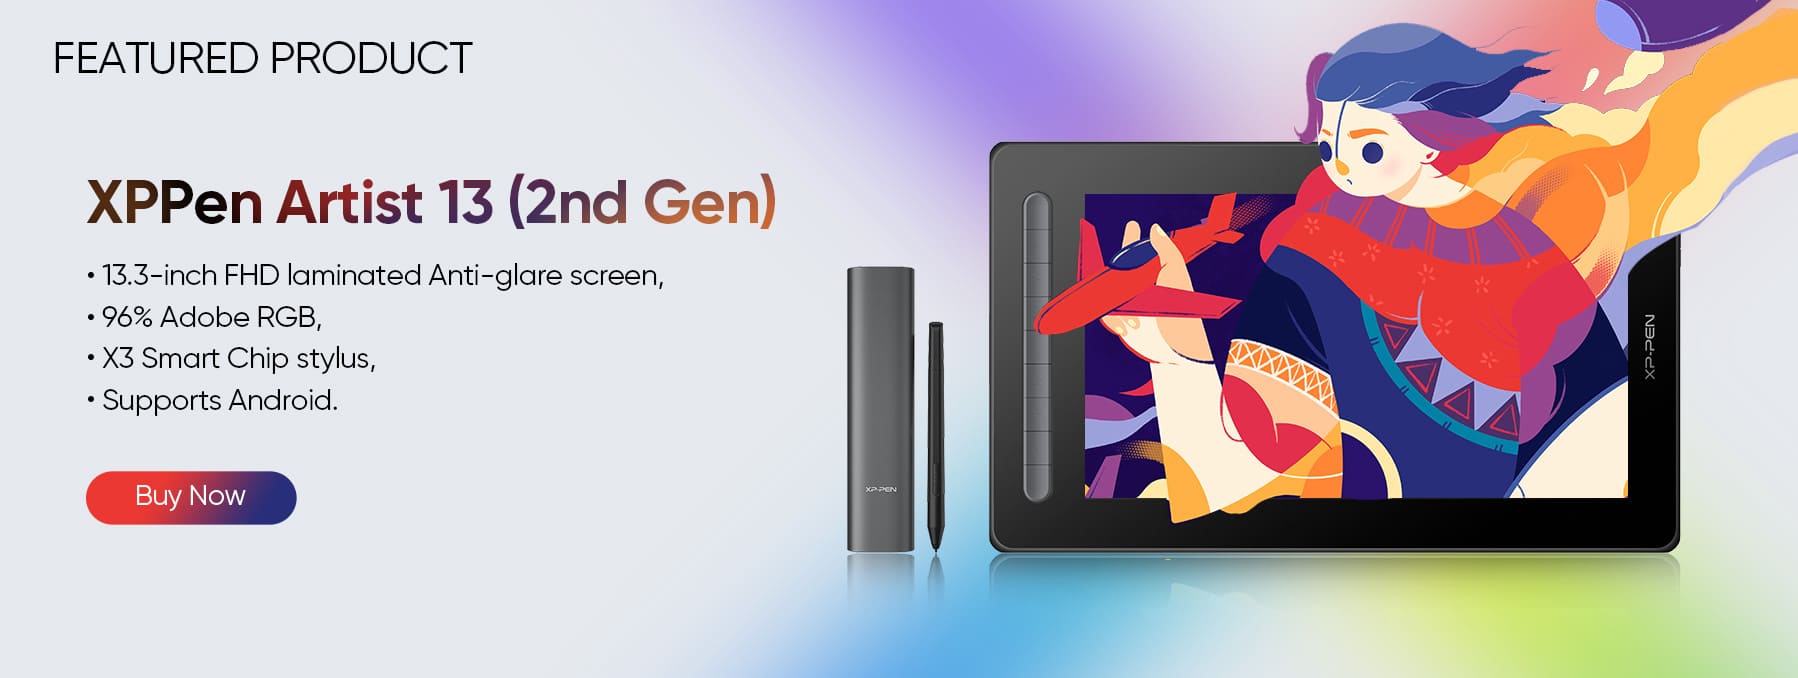 XPPen Artist 13 (2nd Gen) display tablet for 3d design